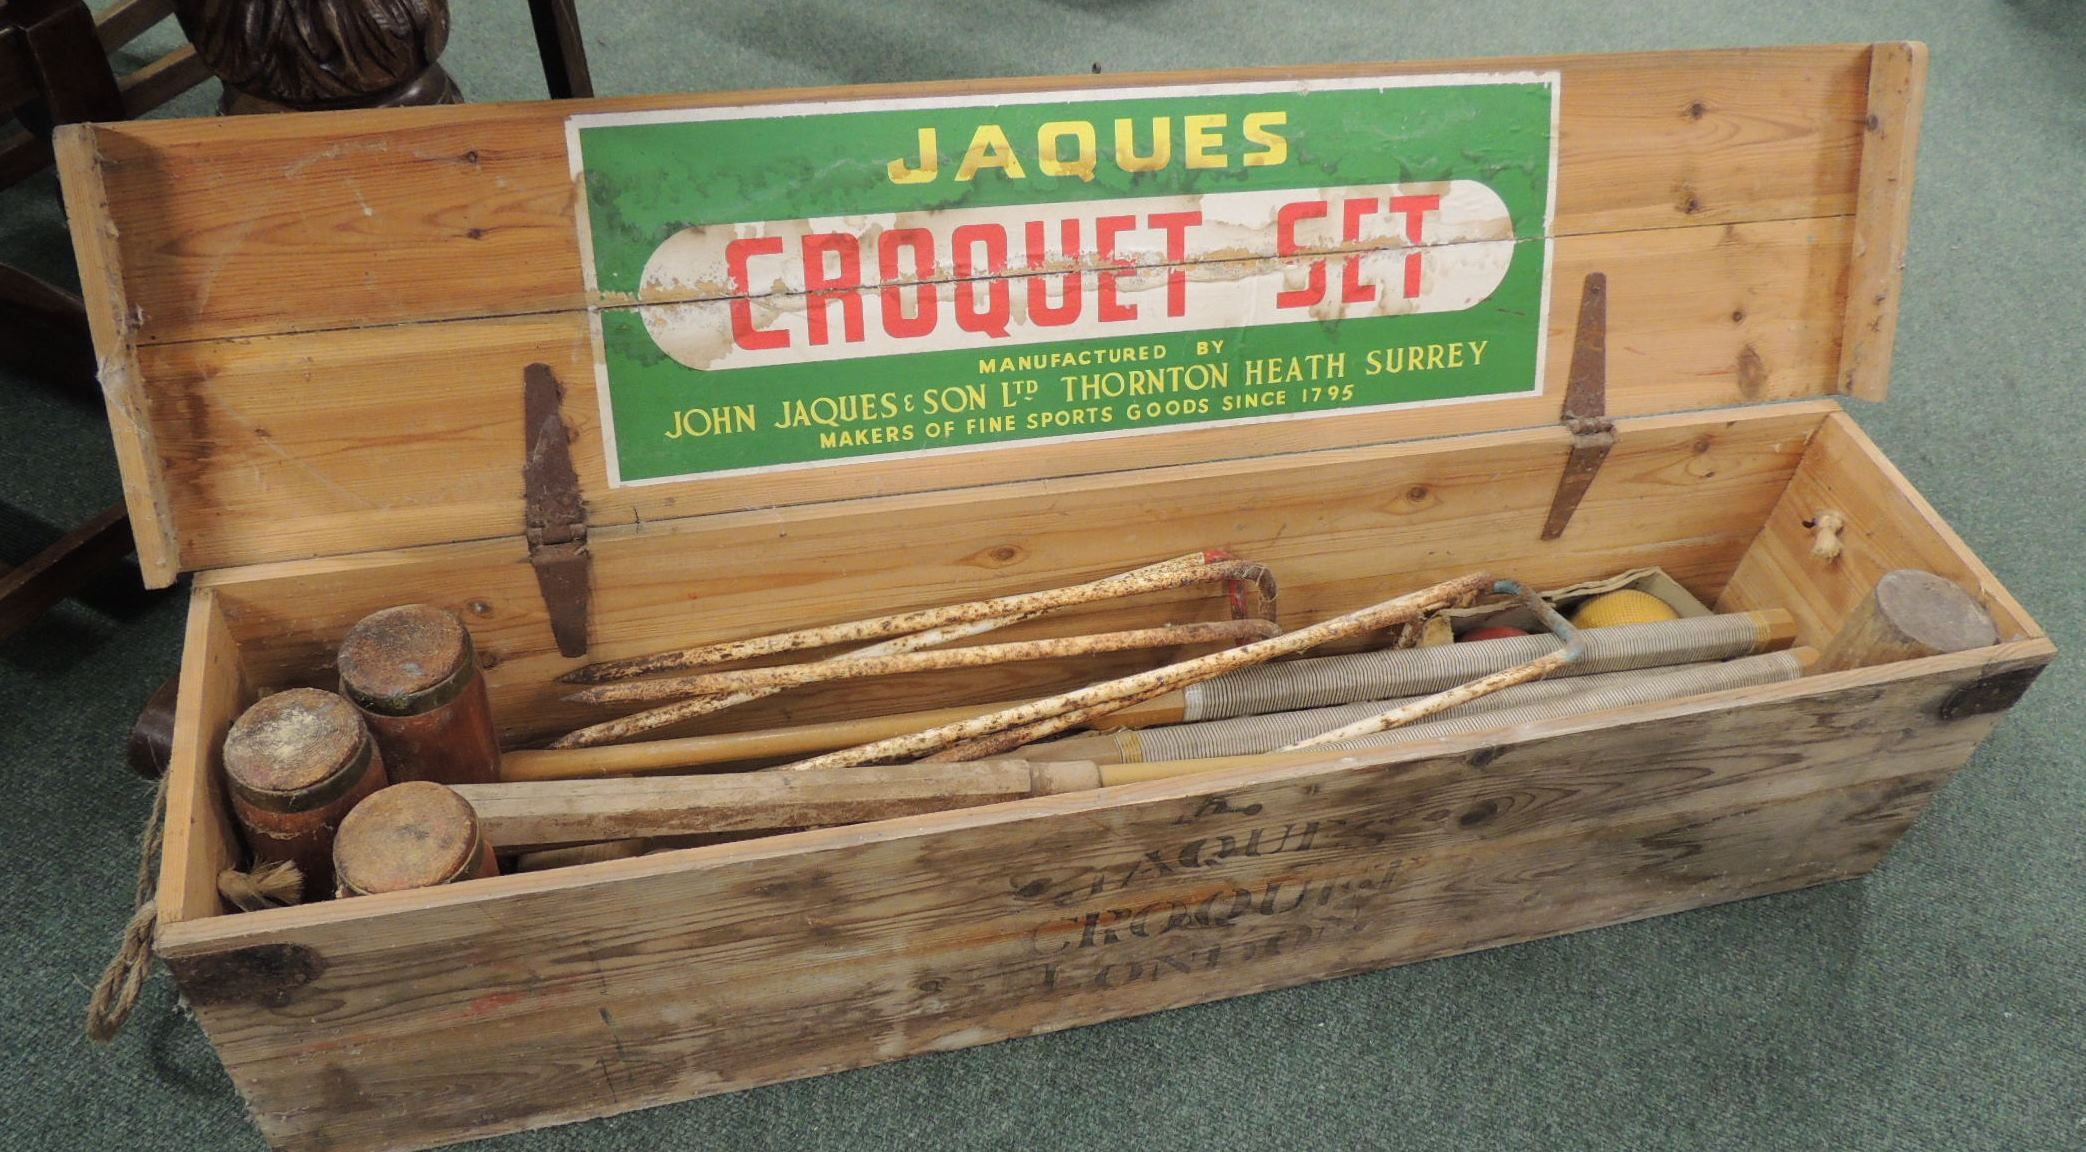 A Jacques croquet set in original wood box